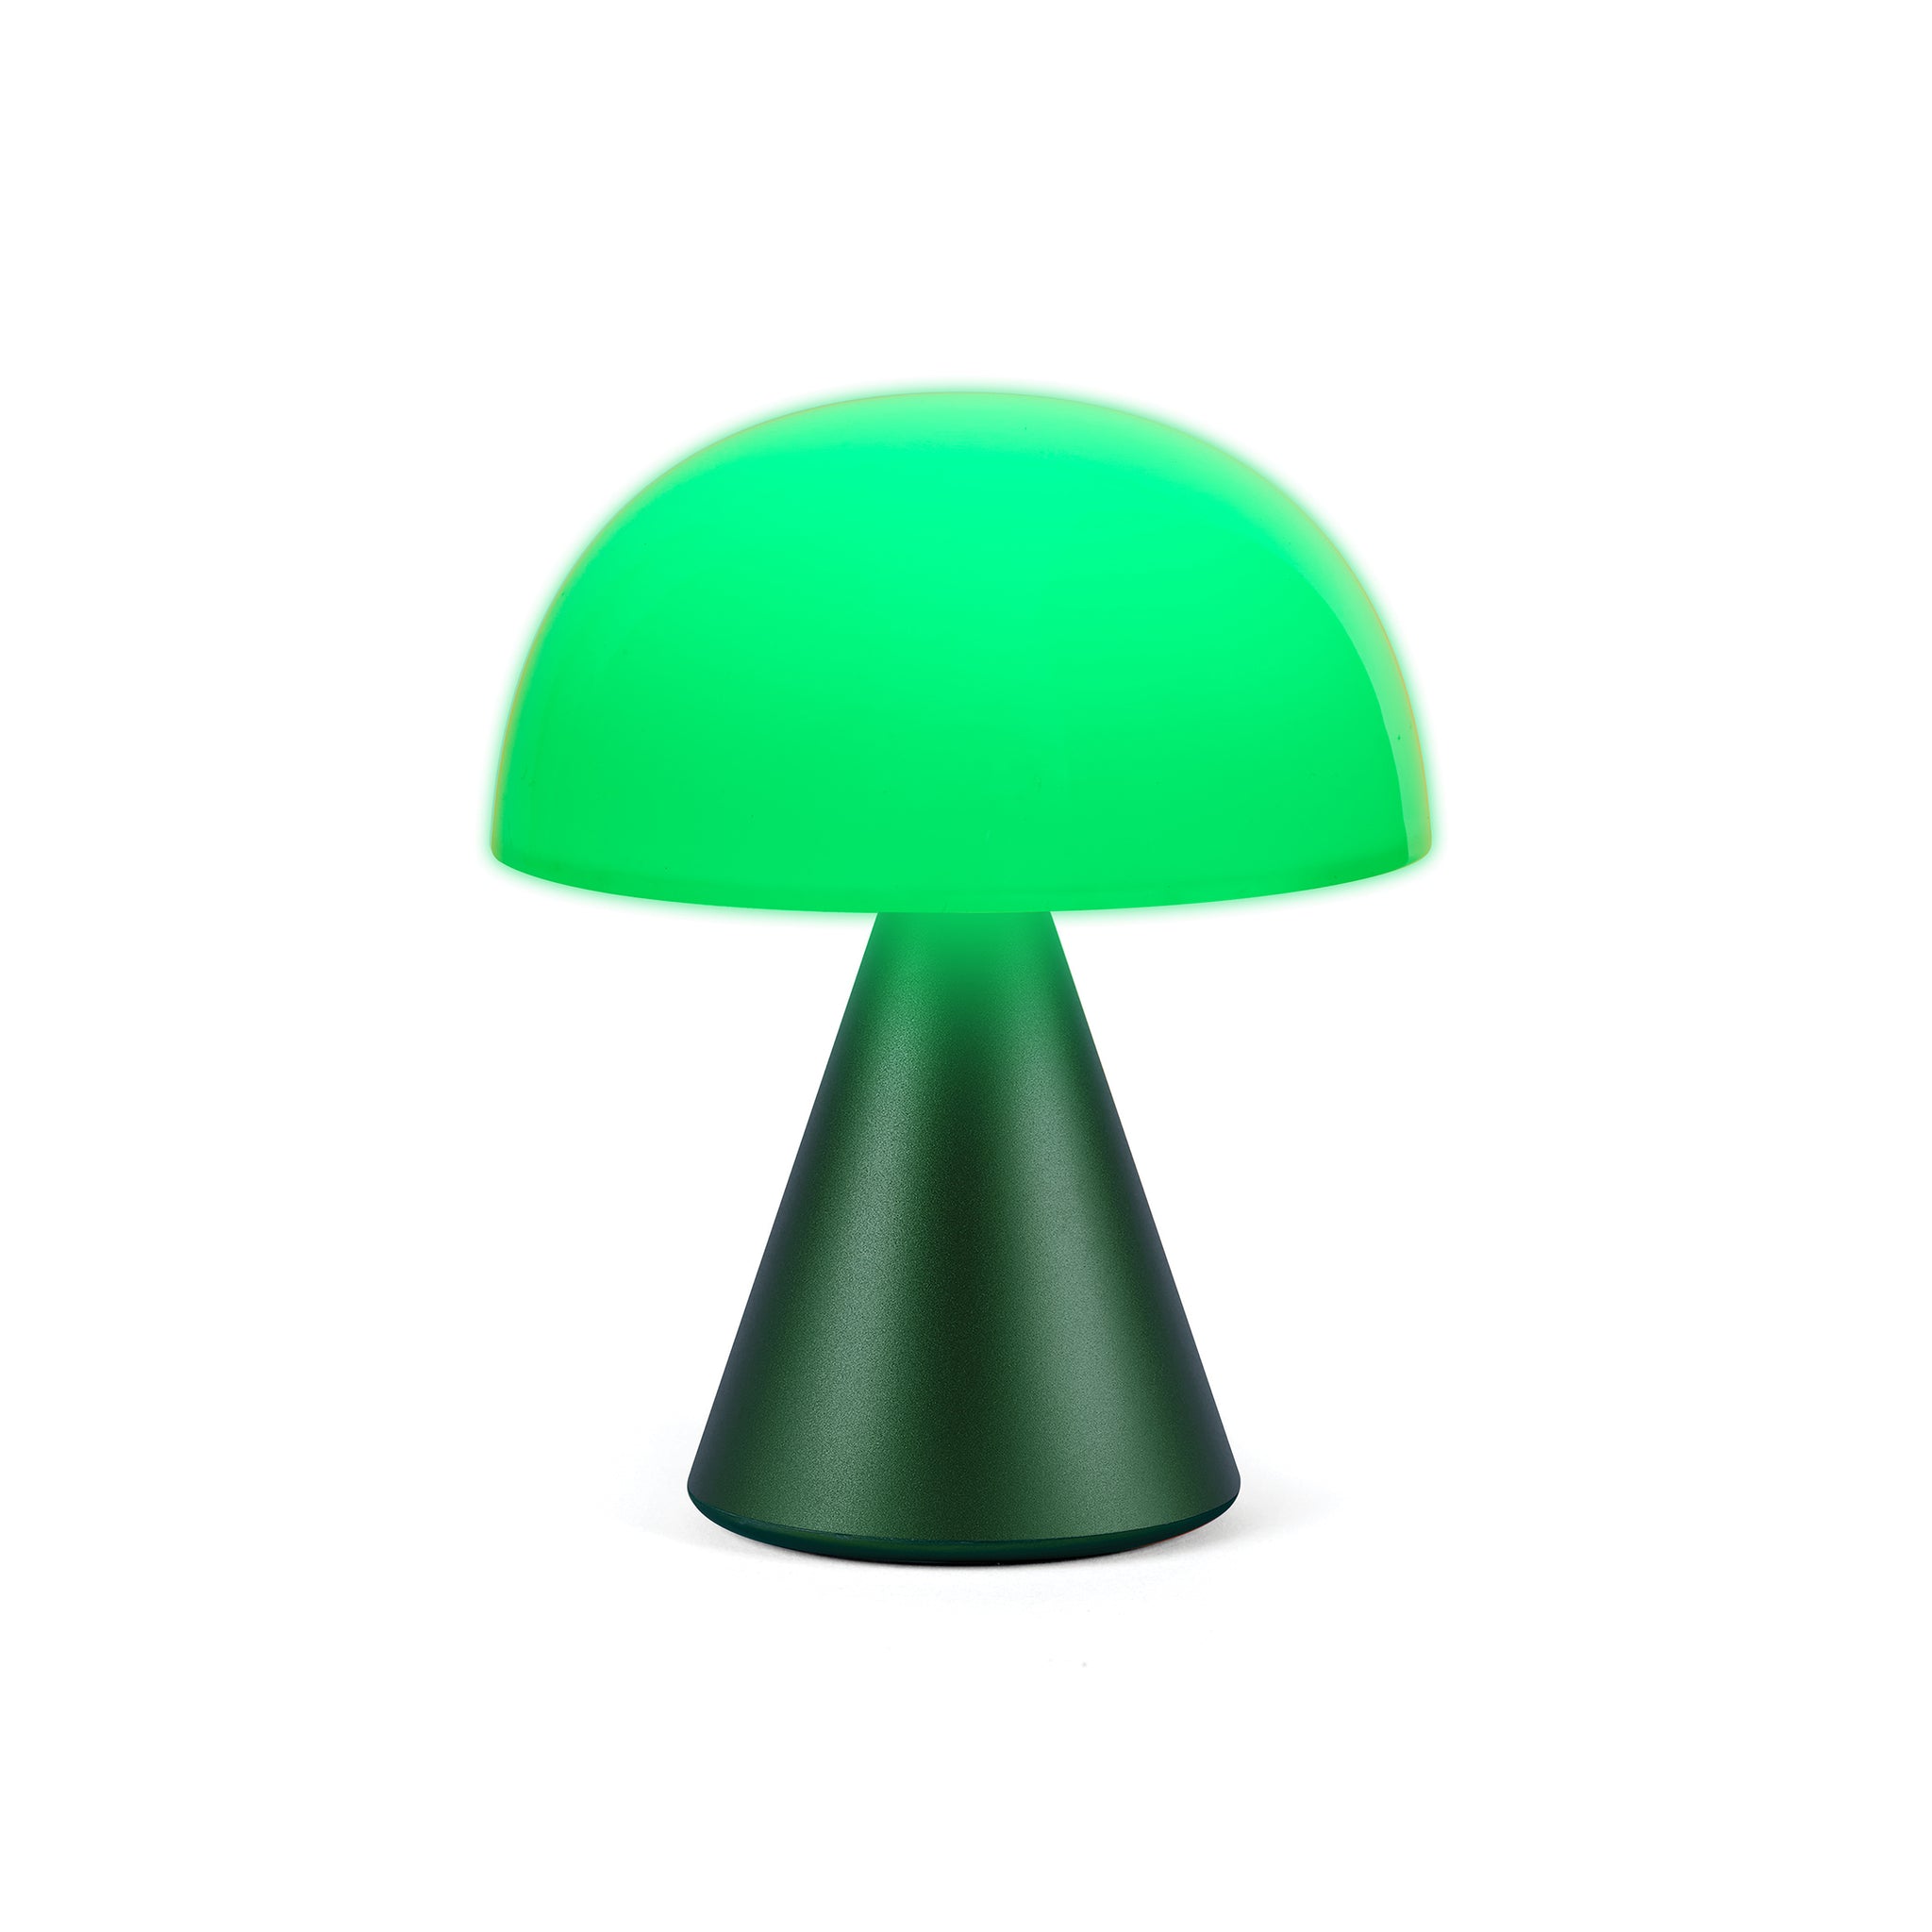 Lexon Mina Medium Donker Groen│Oplaadbare Led-Lamp│art. LH64DG1│vooraanzicht met groen licht aan